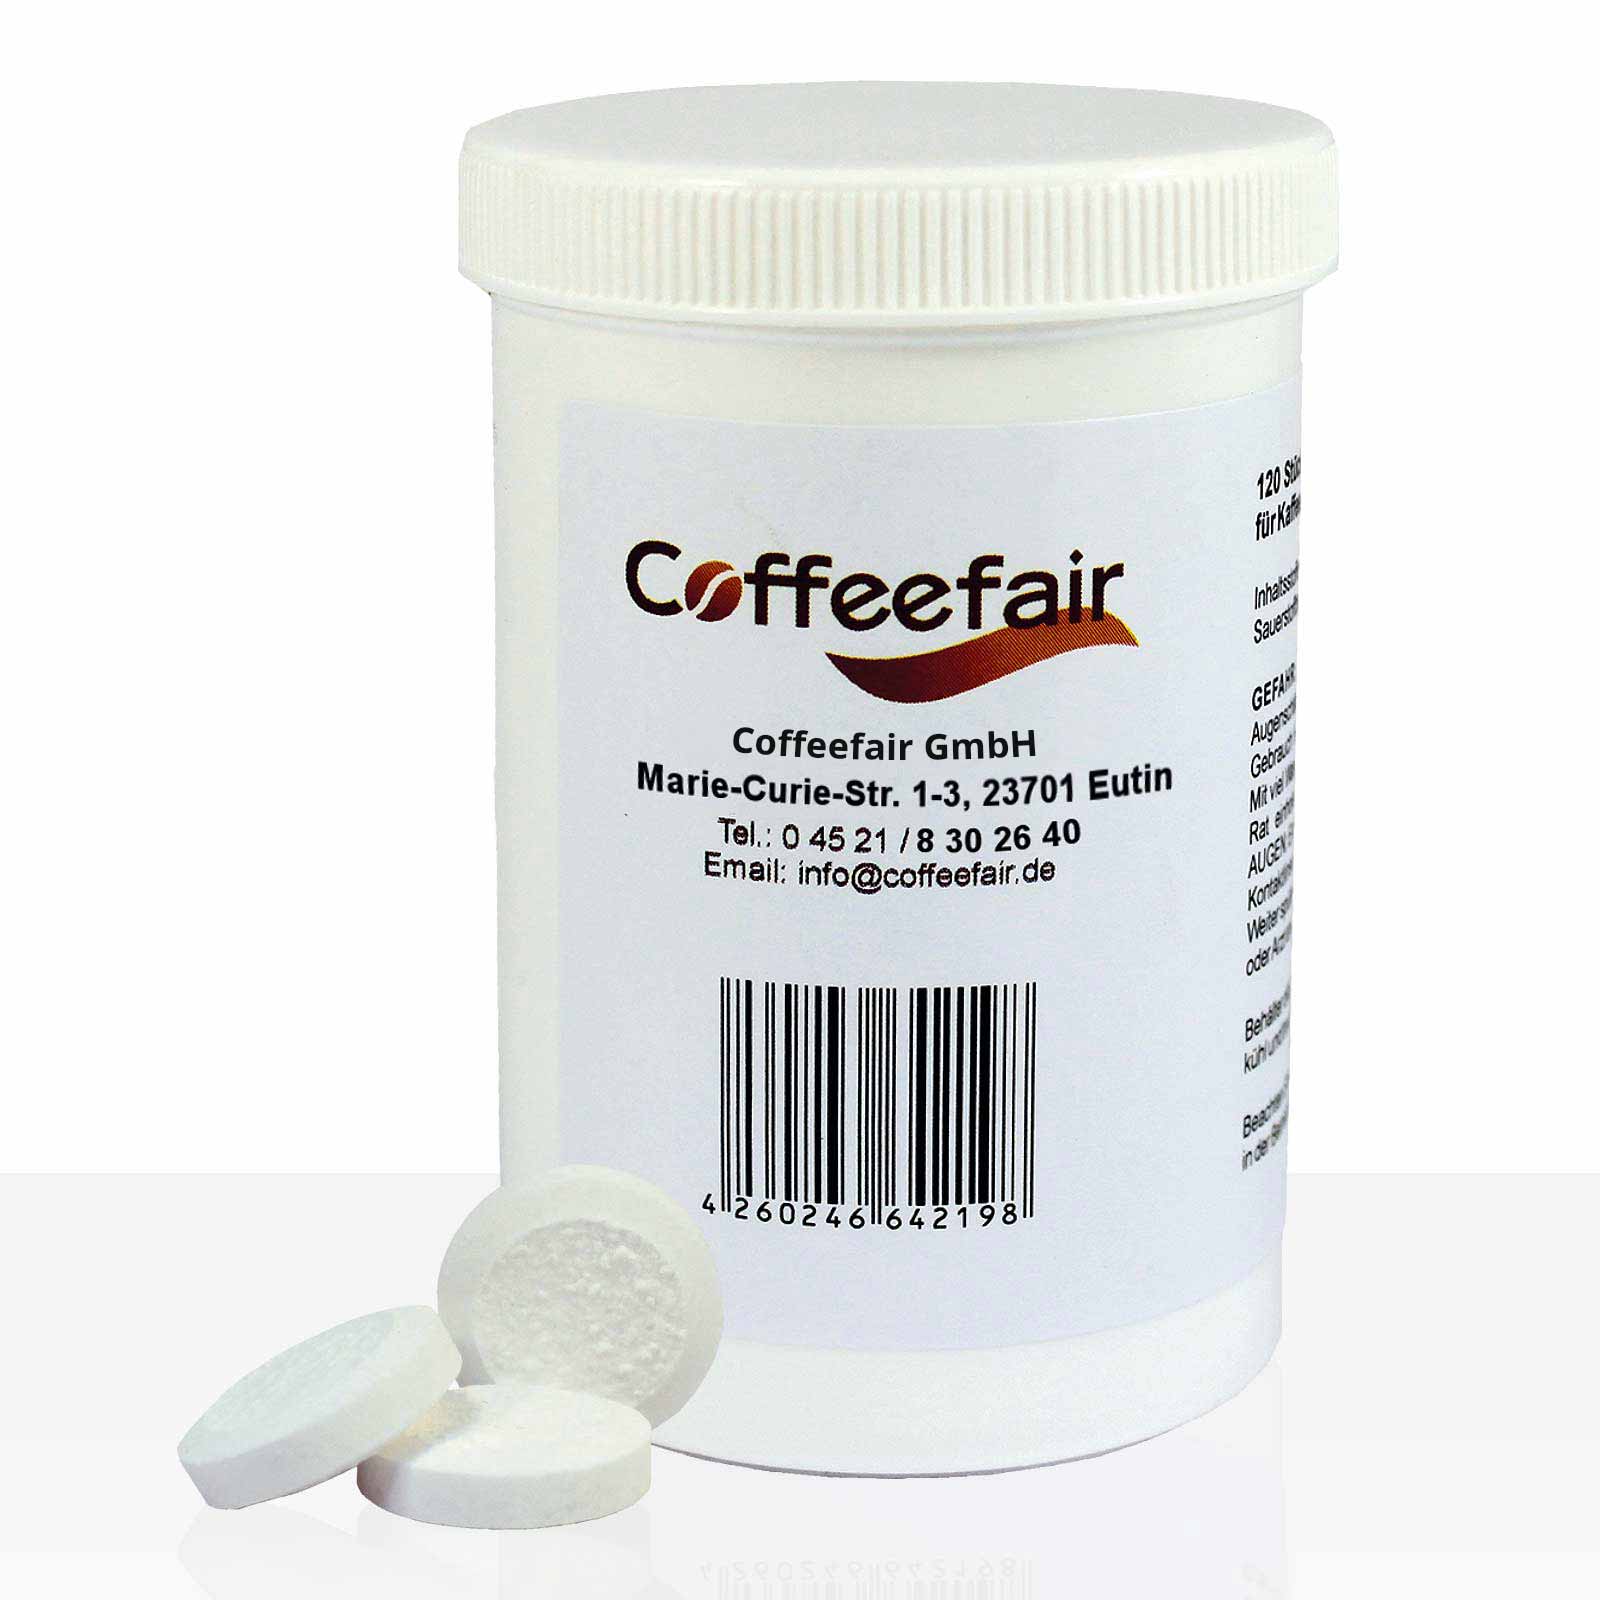 Coffeefair Reinigungstabletten 120 x 1,2g Reiniger-Tabletten